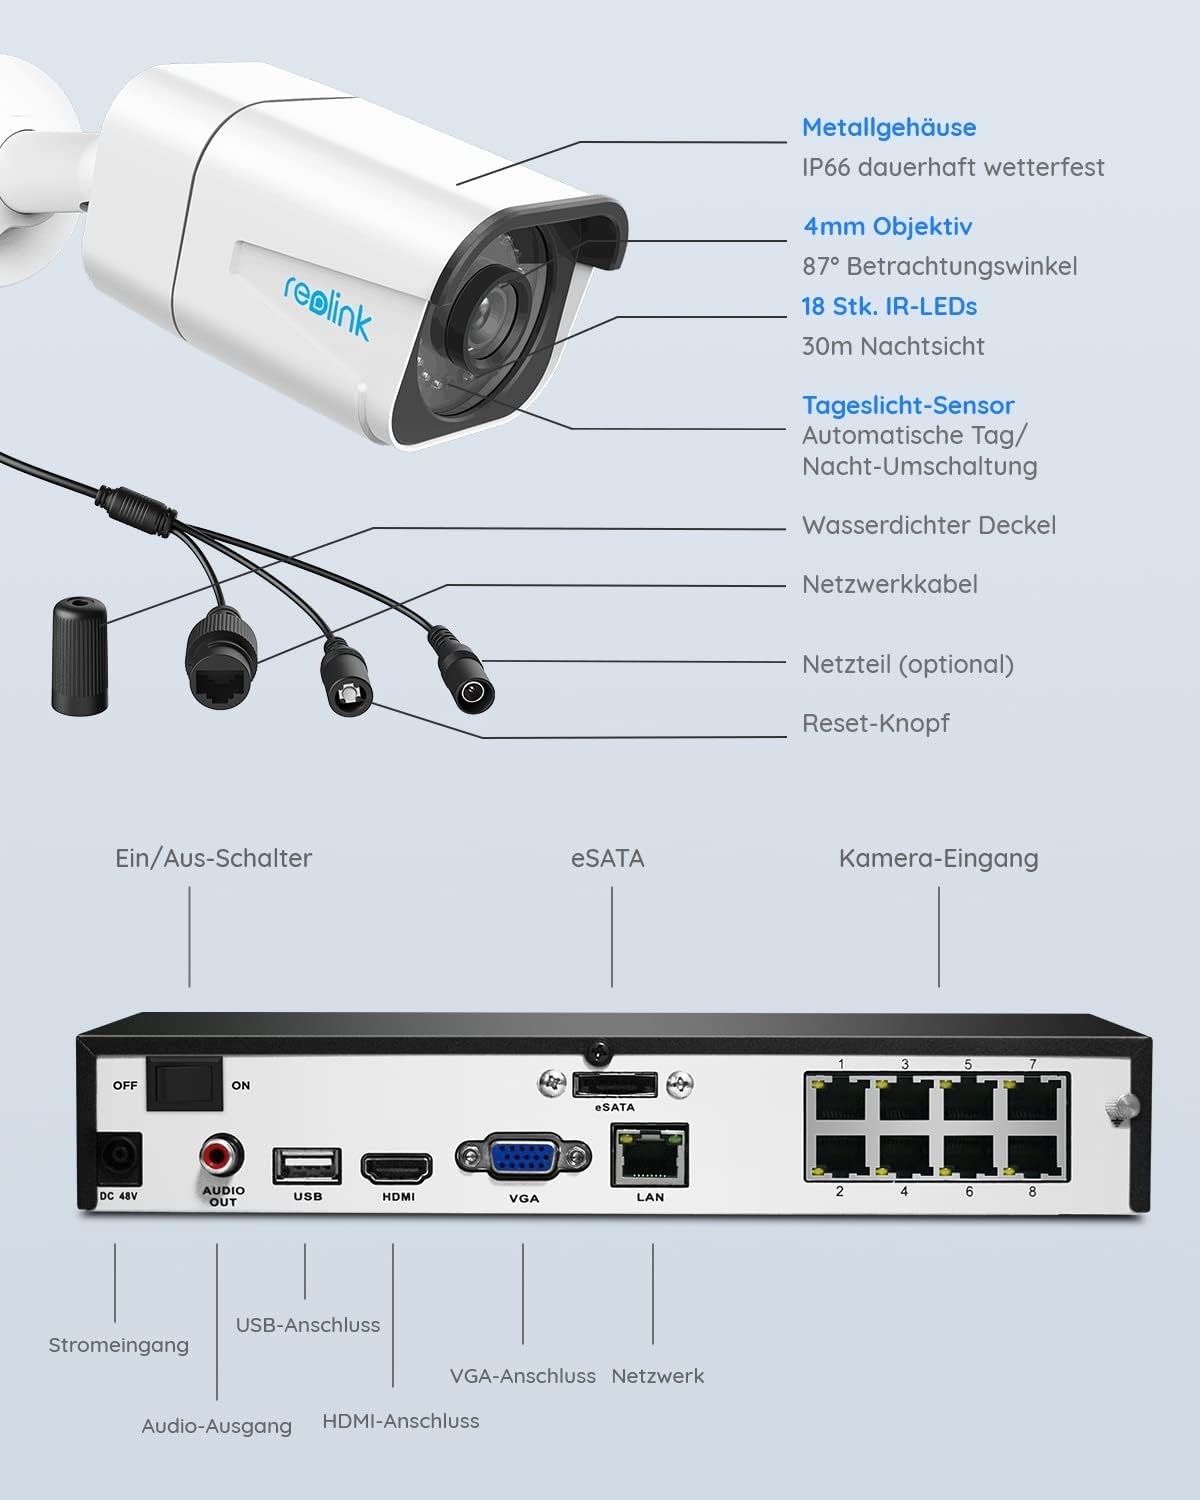 Reolink 8-Kanal-Kit 4K-Überwachungskamerasystem mit 4 PoE-IP-Kameras, 2 TB HDD NVR, Personen- und Fahrzeugerkennung, IP66 wetterfest, RLK8-800B4-A